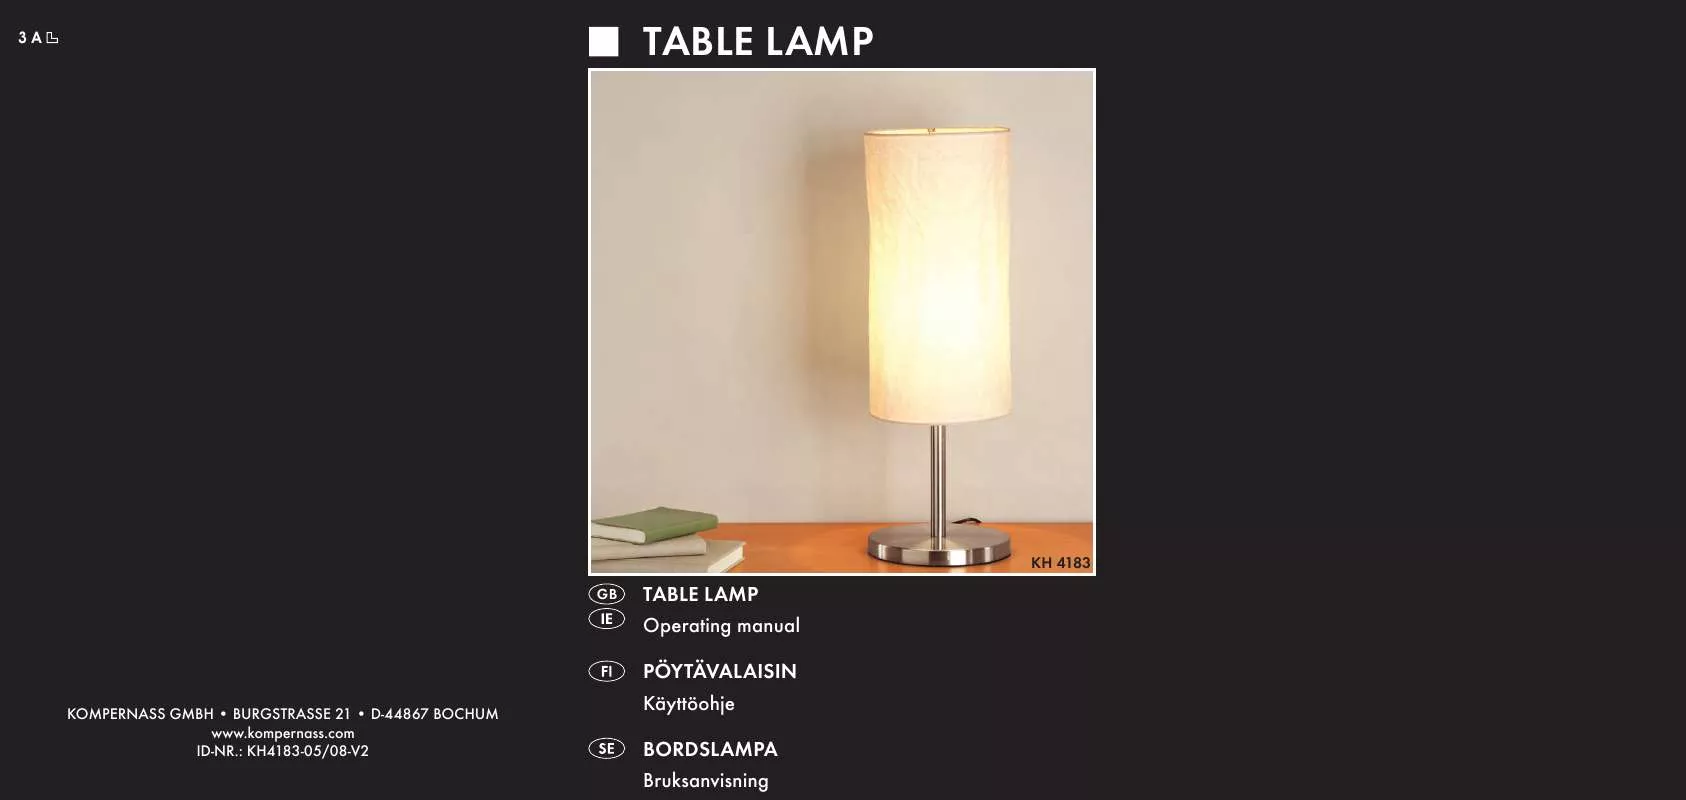 Mode d'emploi KOMPERNASS KH 4183 TABLE LAMP